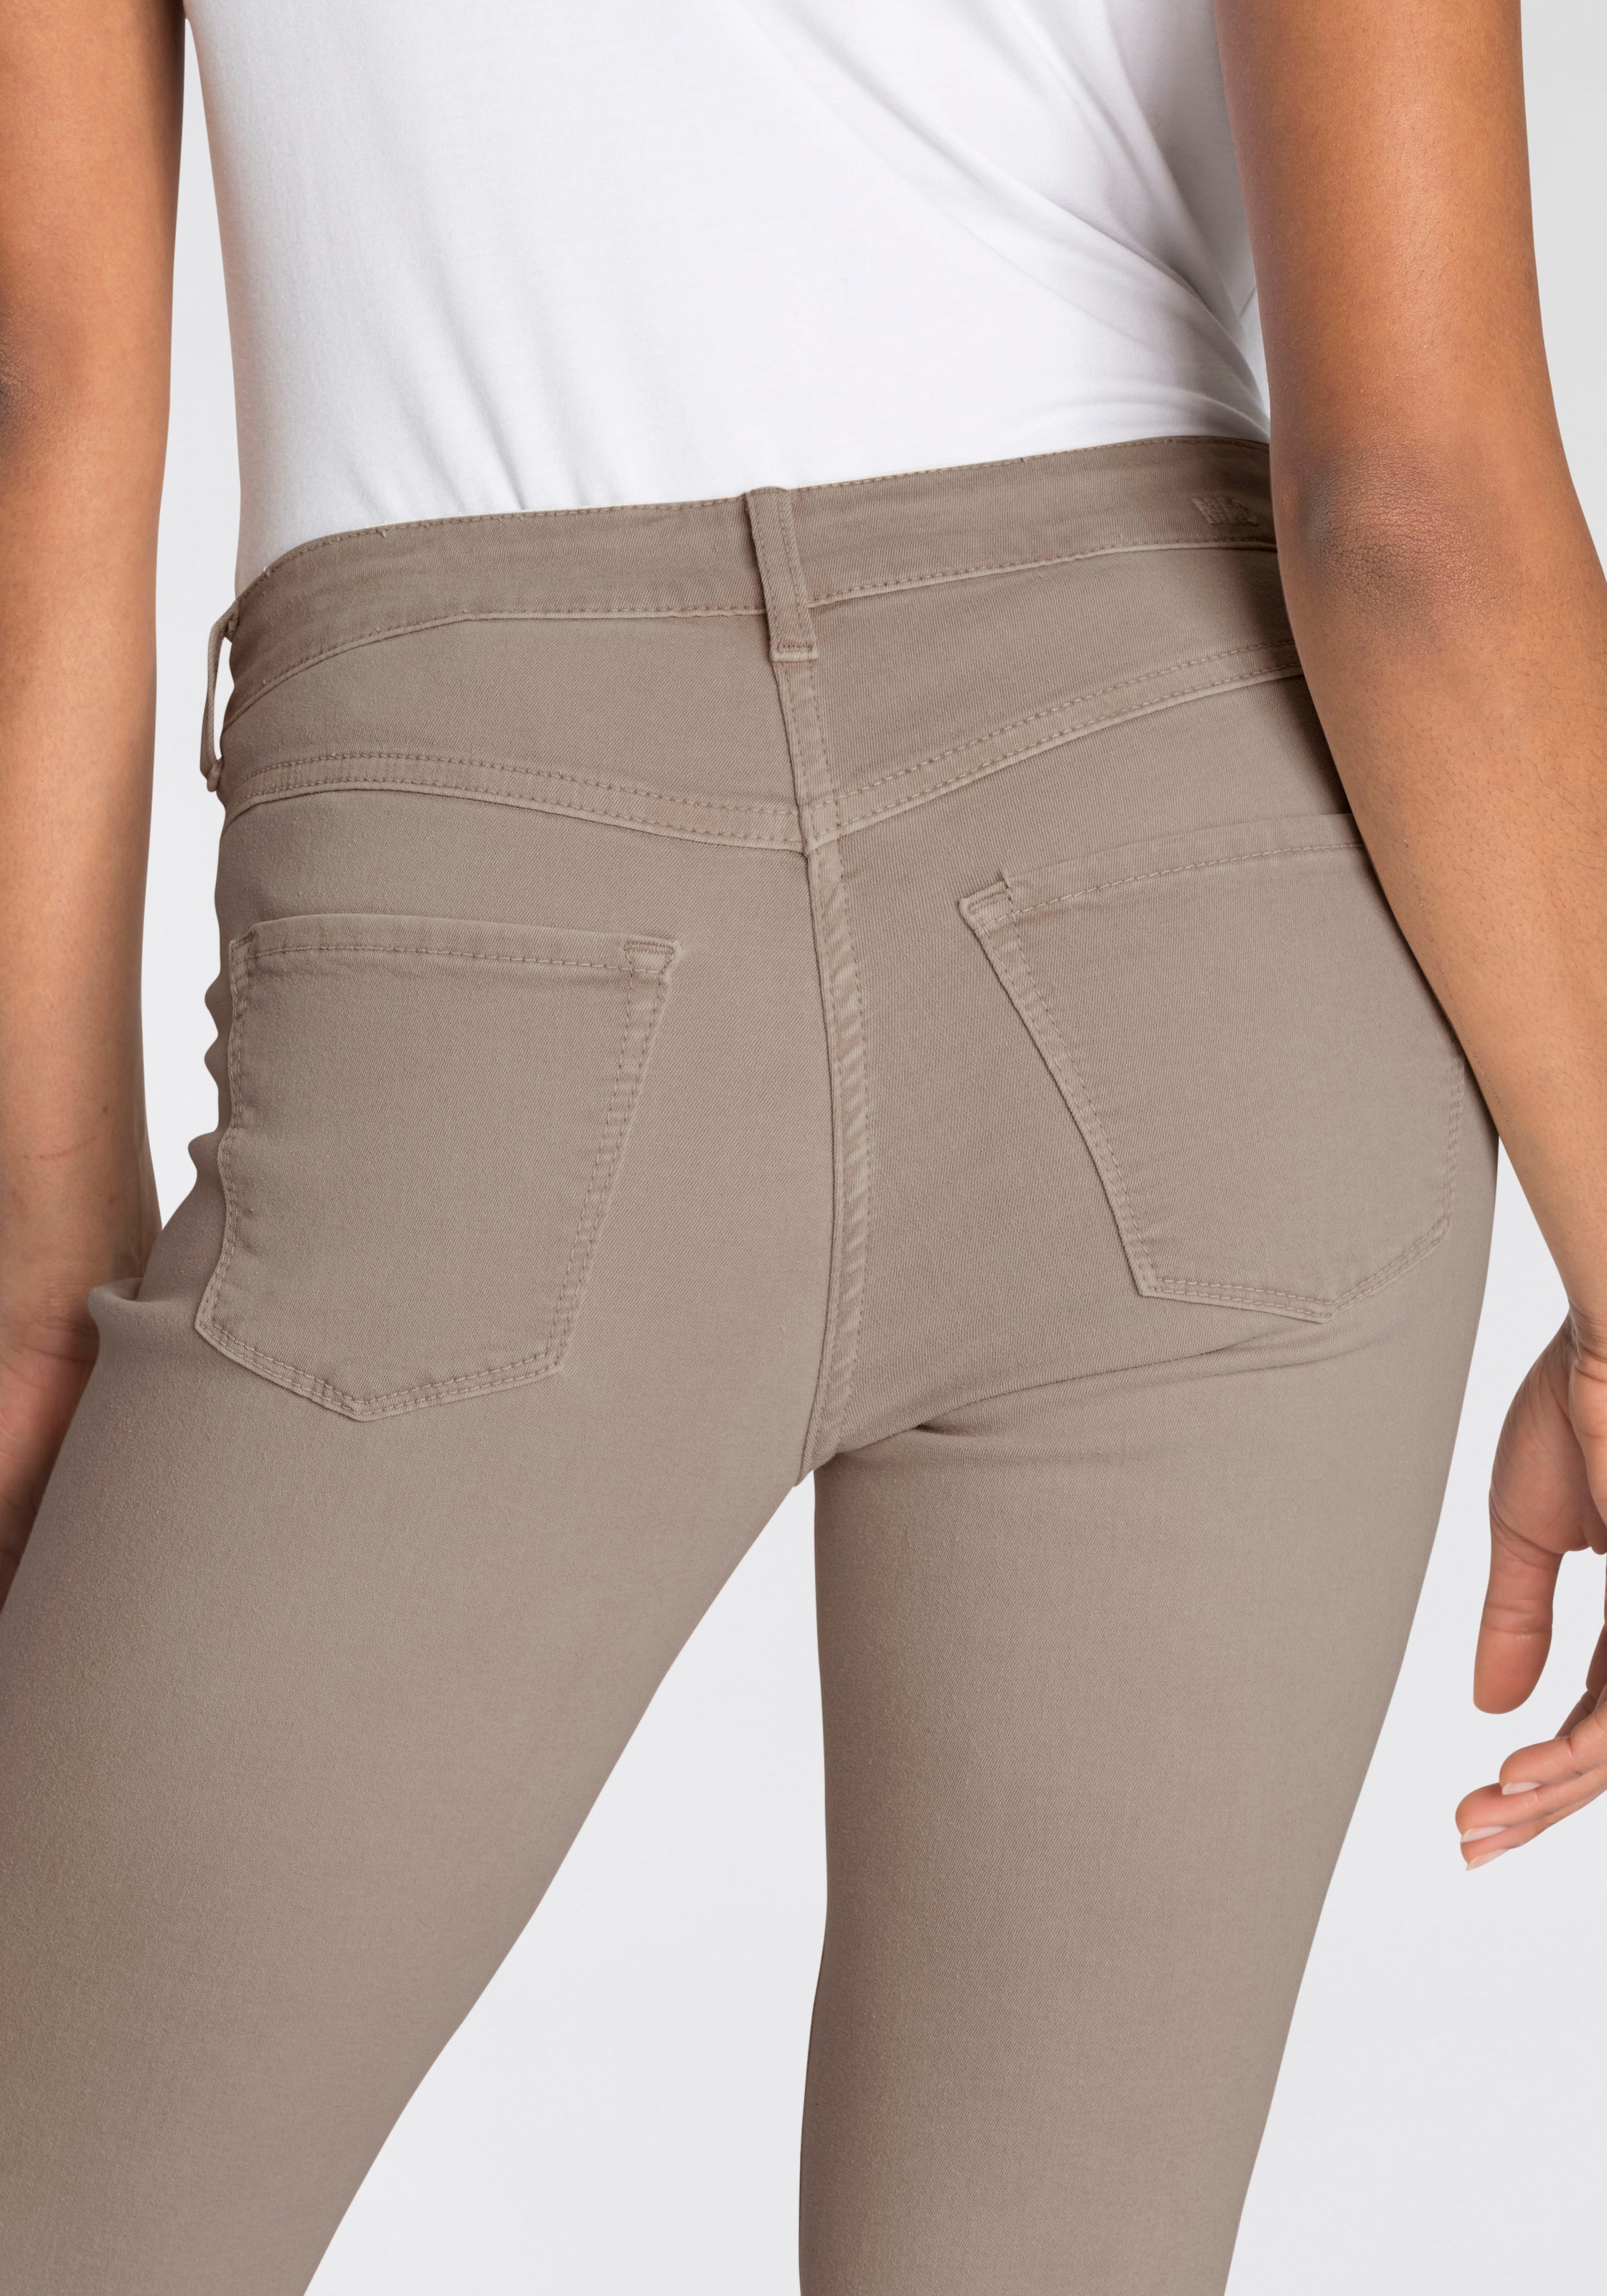 den Power-Stretch ganzen Skinny-fit-Jeans bequem Tag sitzt kaufen »Hiperstretch-Skinny«, MAC Qualität